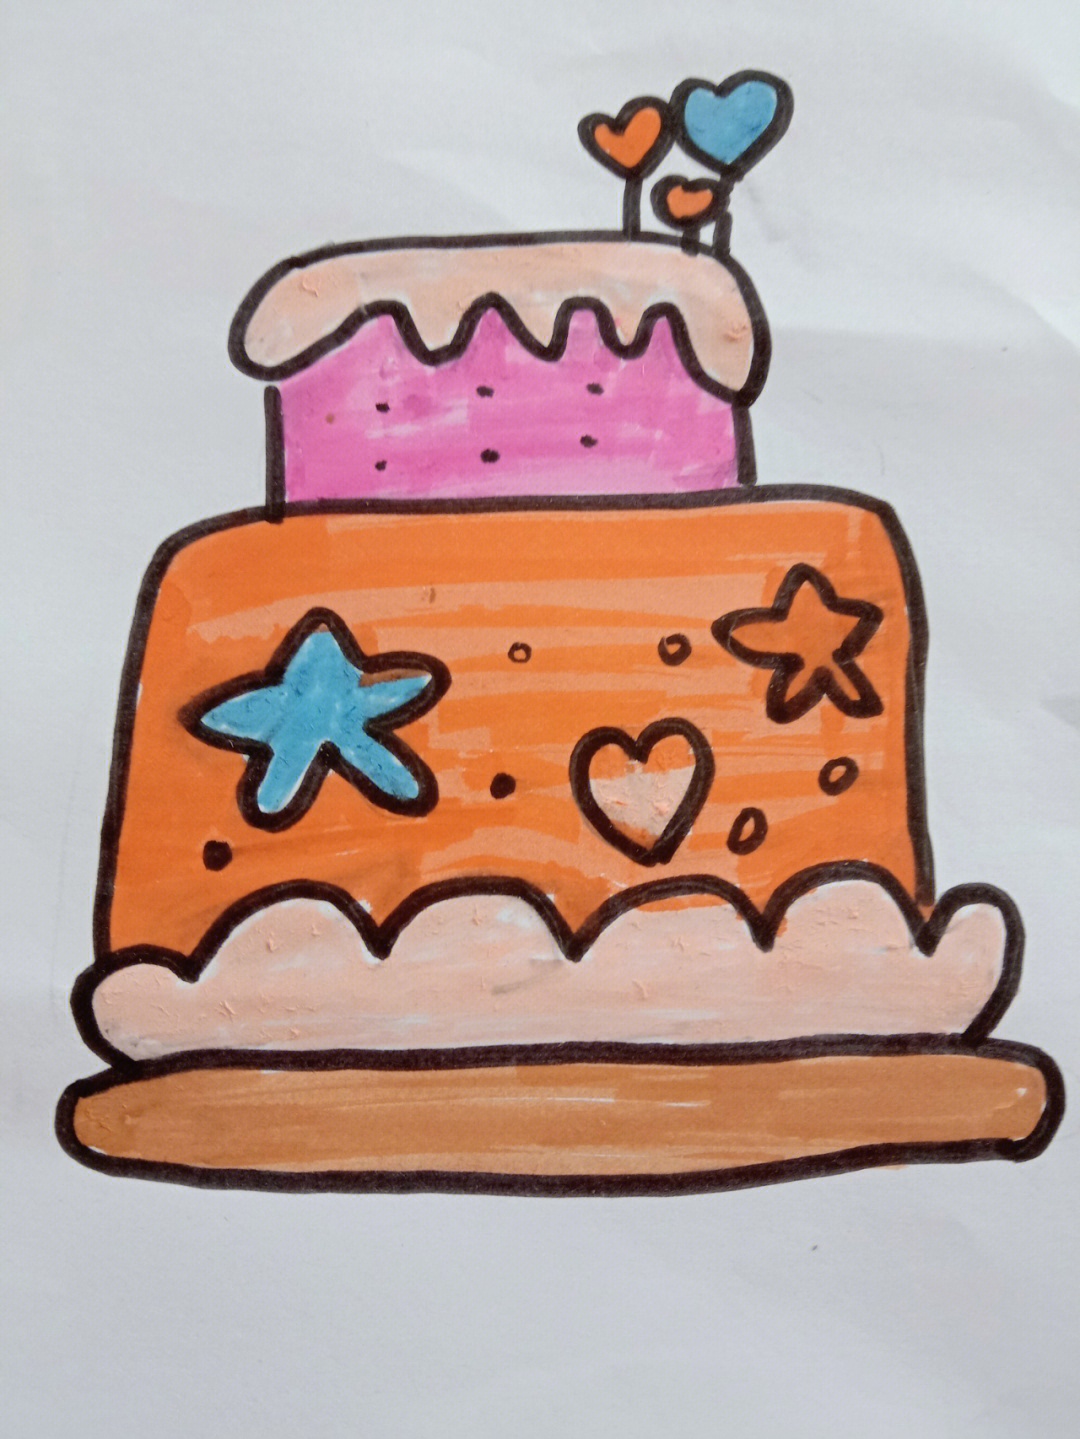 4-6岁儿童画教程 简单小蛋糕的画法图解💛巧艺网